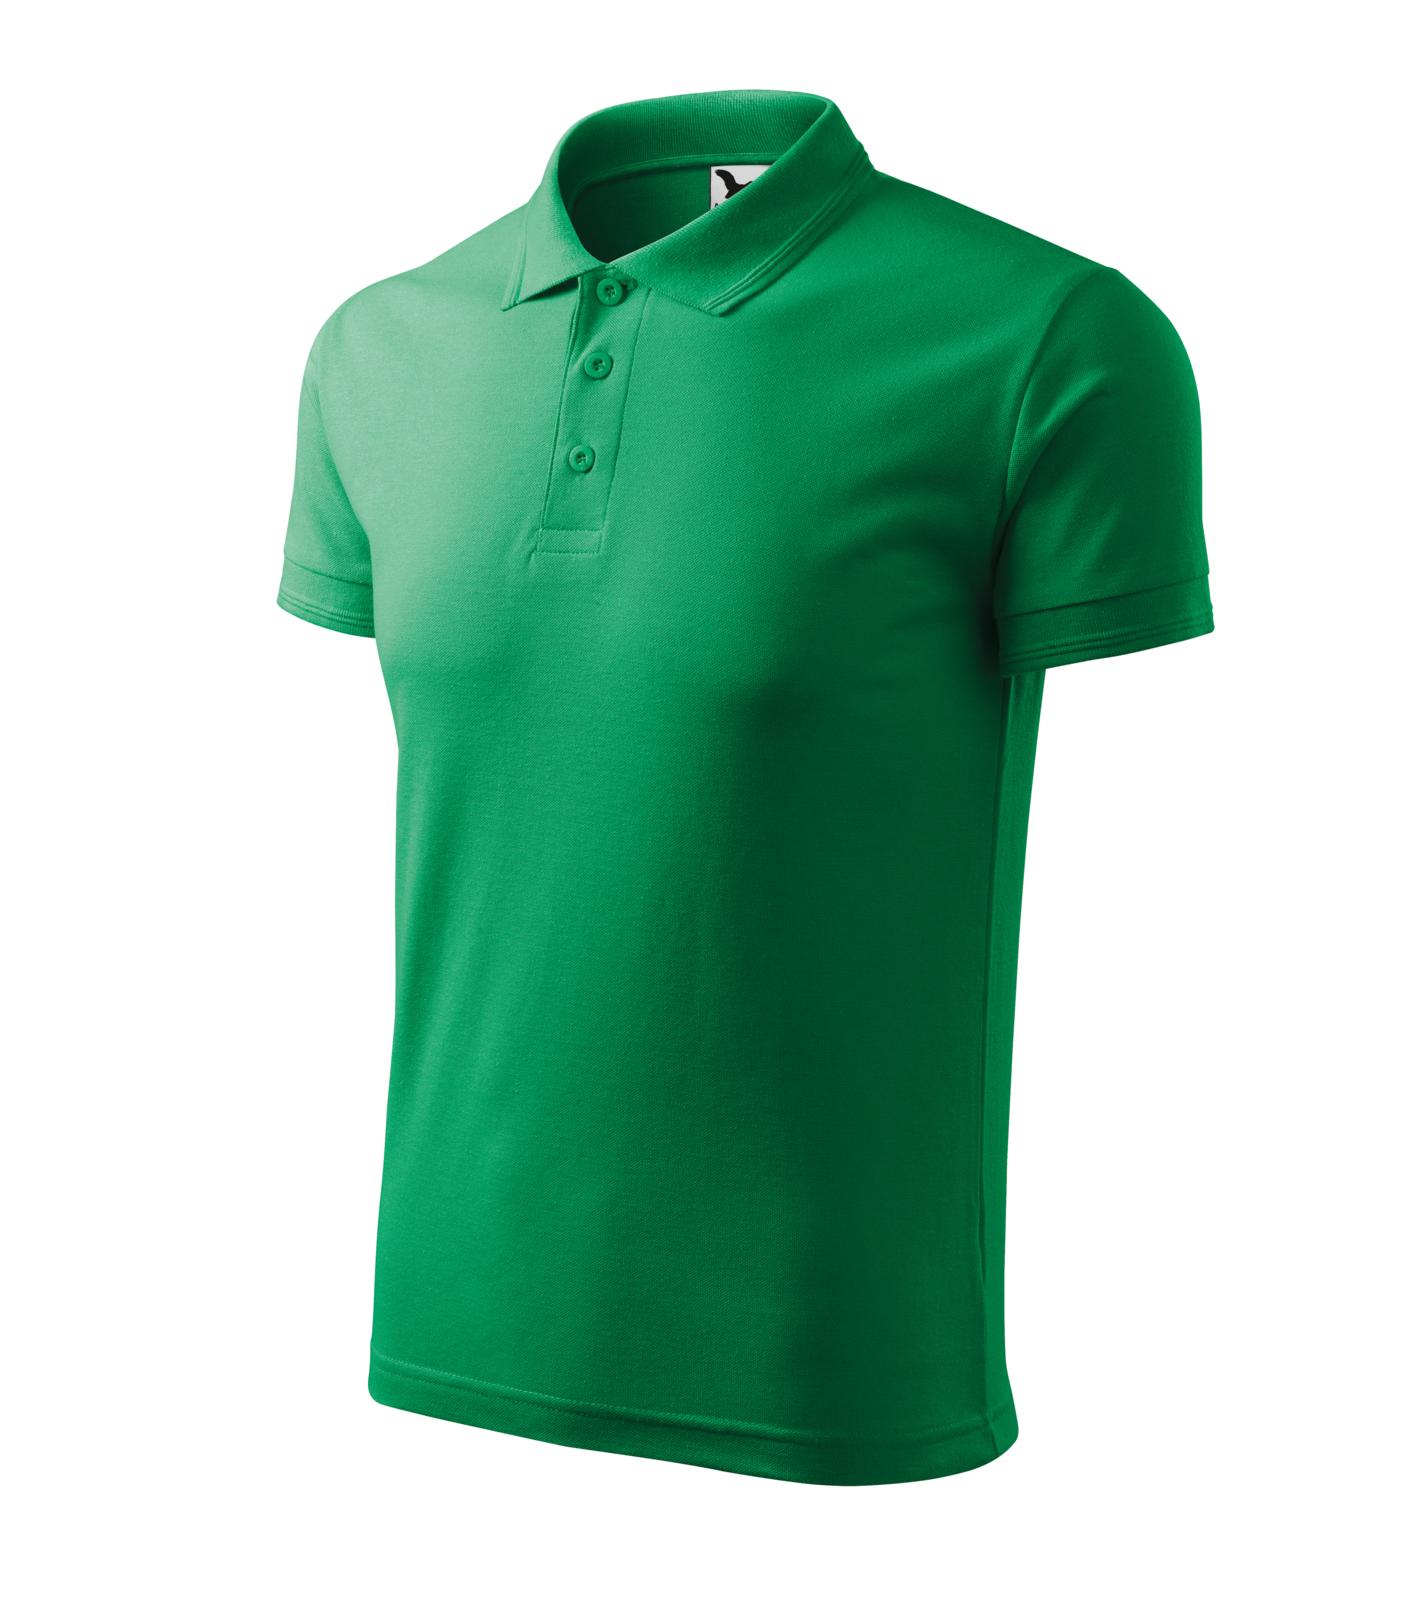 Pique Polo Polokošile pánská Barva: středně zelená, Velikost: M